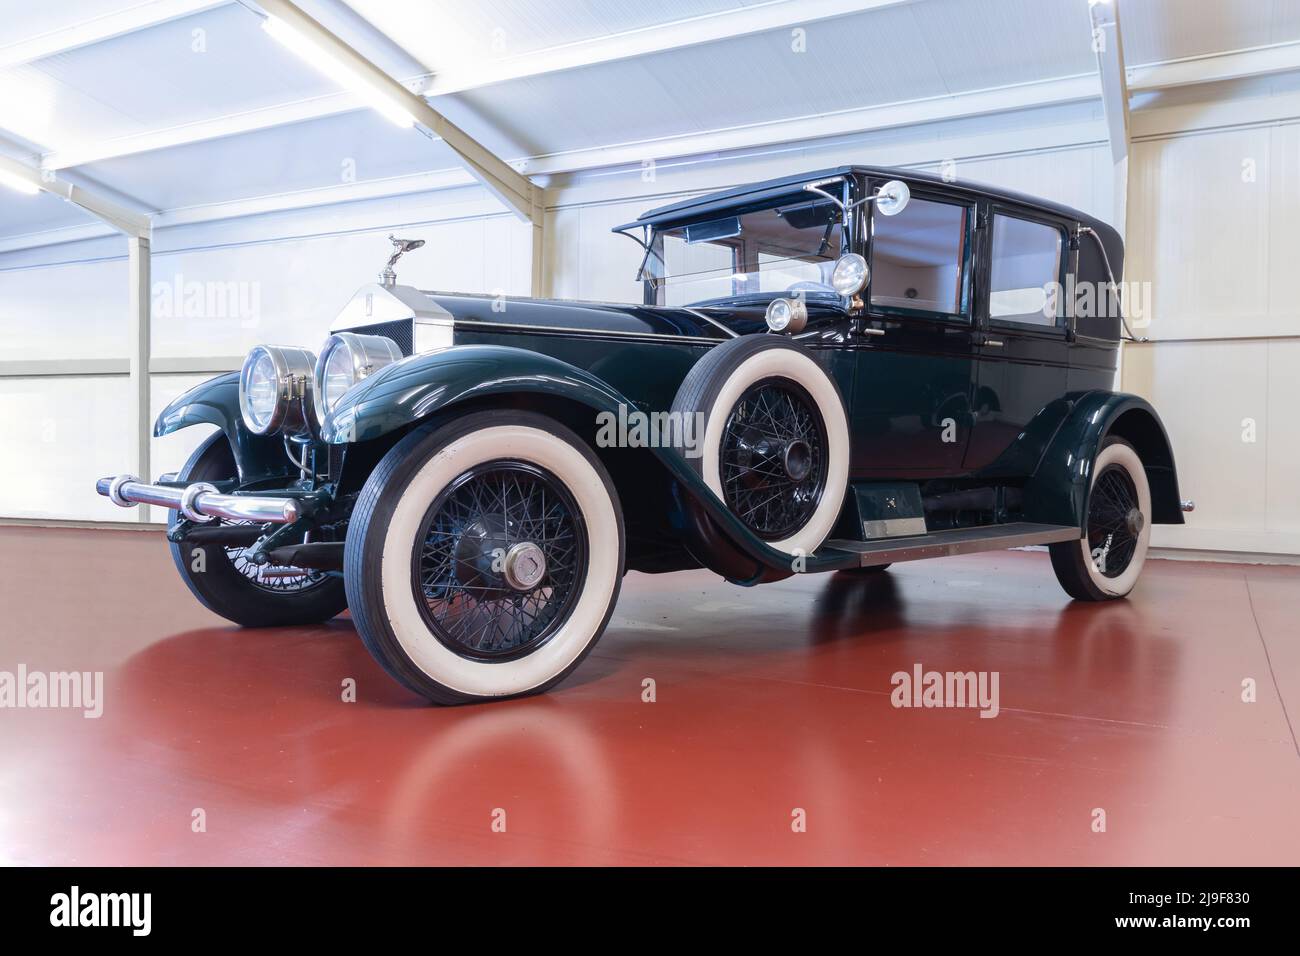 GALDAMES, ESPAÑA-8 DE AGOSTO de 2021: 1926 Rolls-Royce Springfield Ghost de plata Tilbury Sedan LHD en Torre Loizaga (Miguel de la Via) Museo del Automóvil Foto de stock